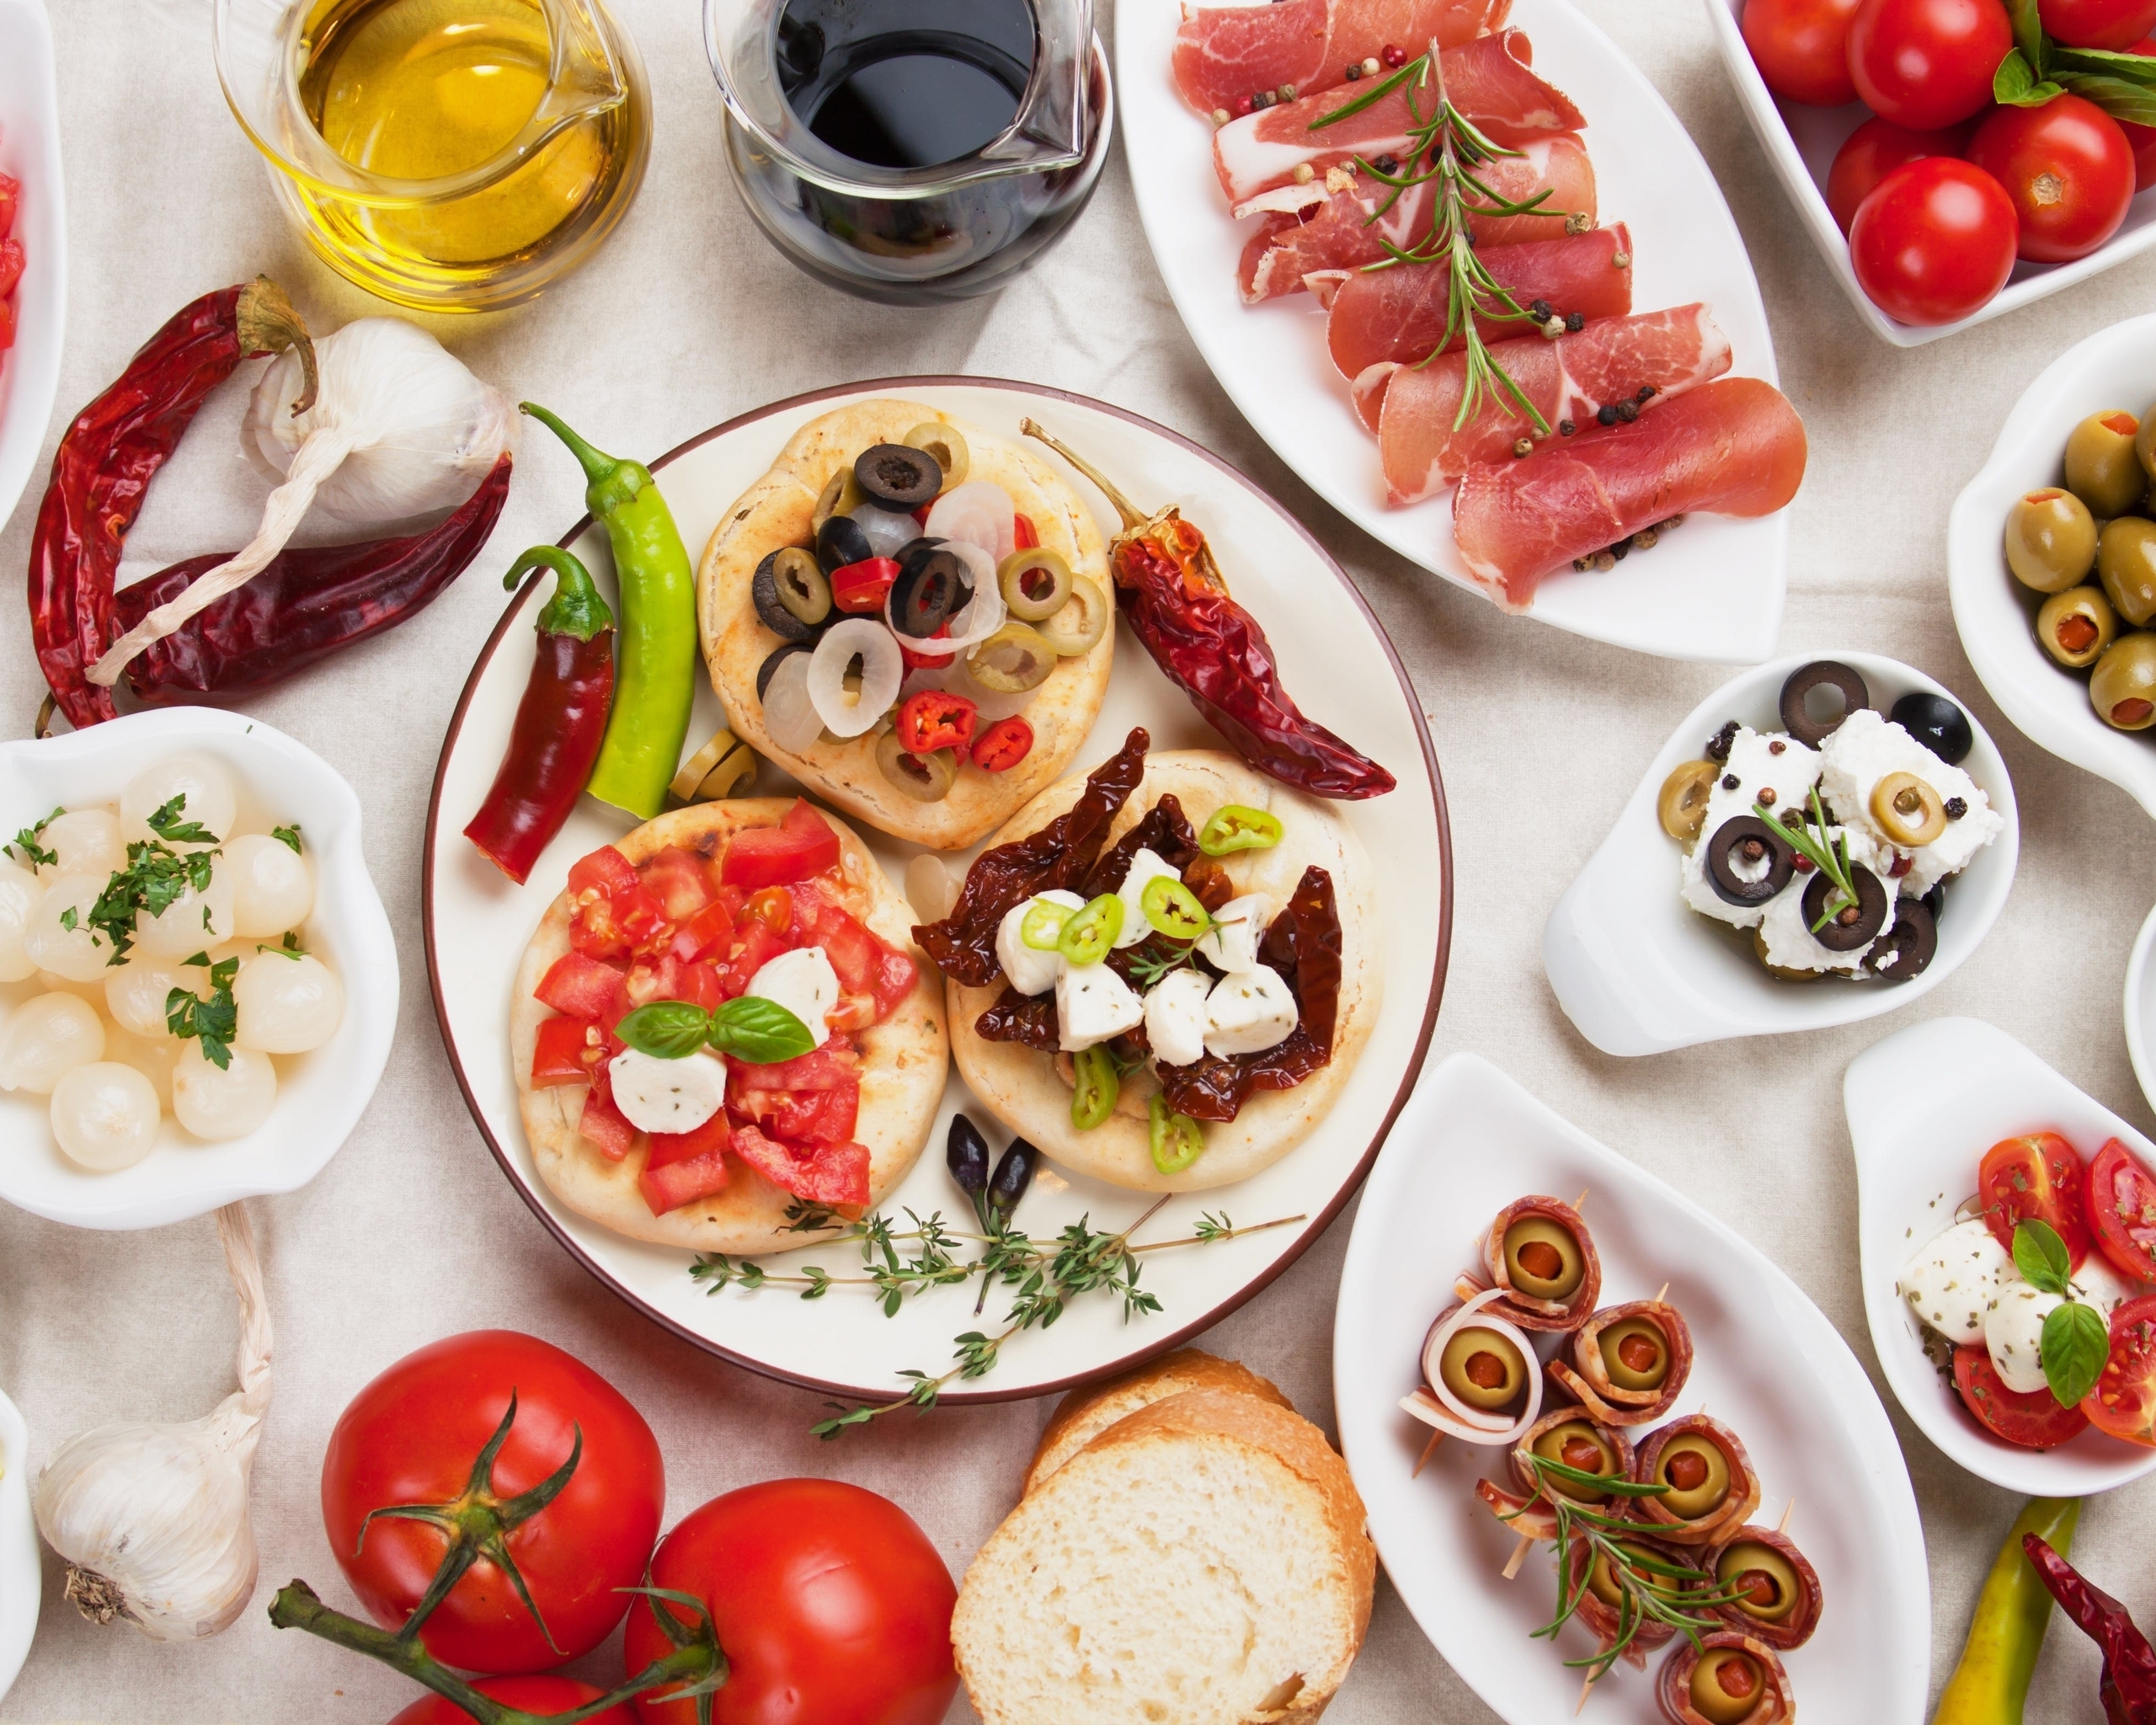 Картинка: Закуска, оливки, маслины, нарезка, перец, помидоры, масло, соус